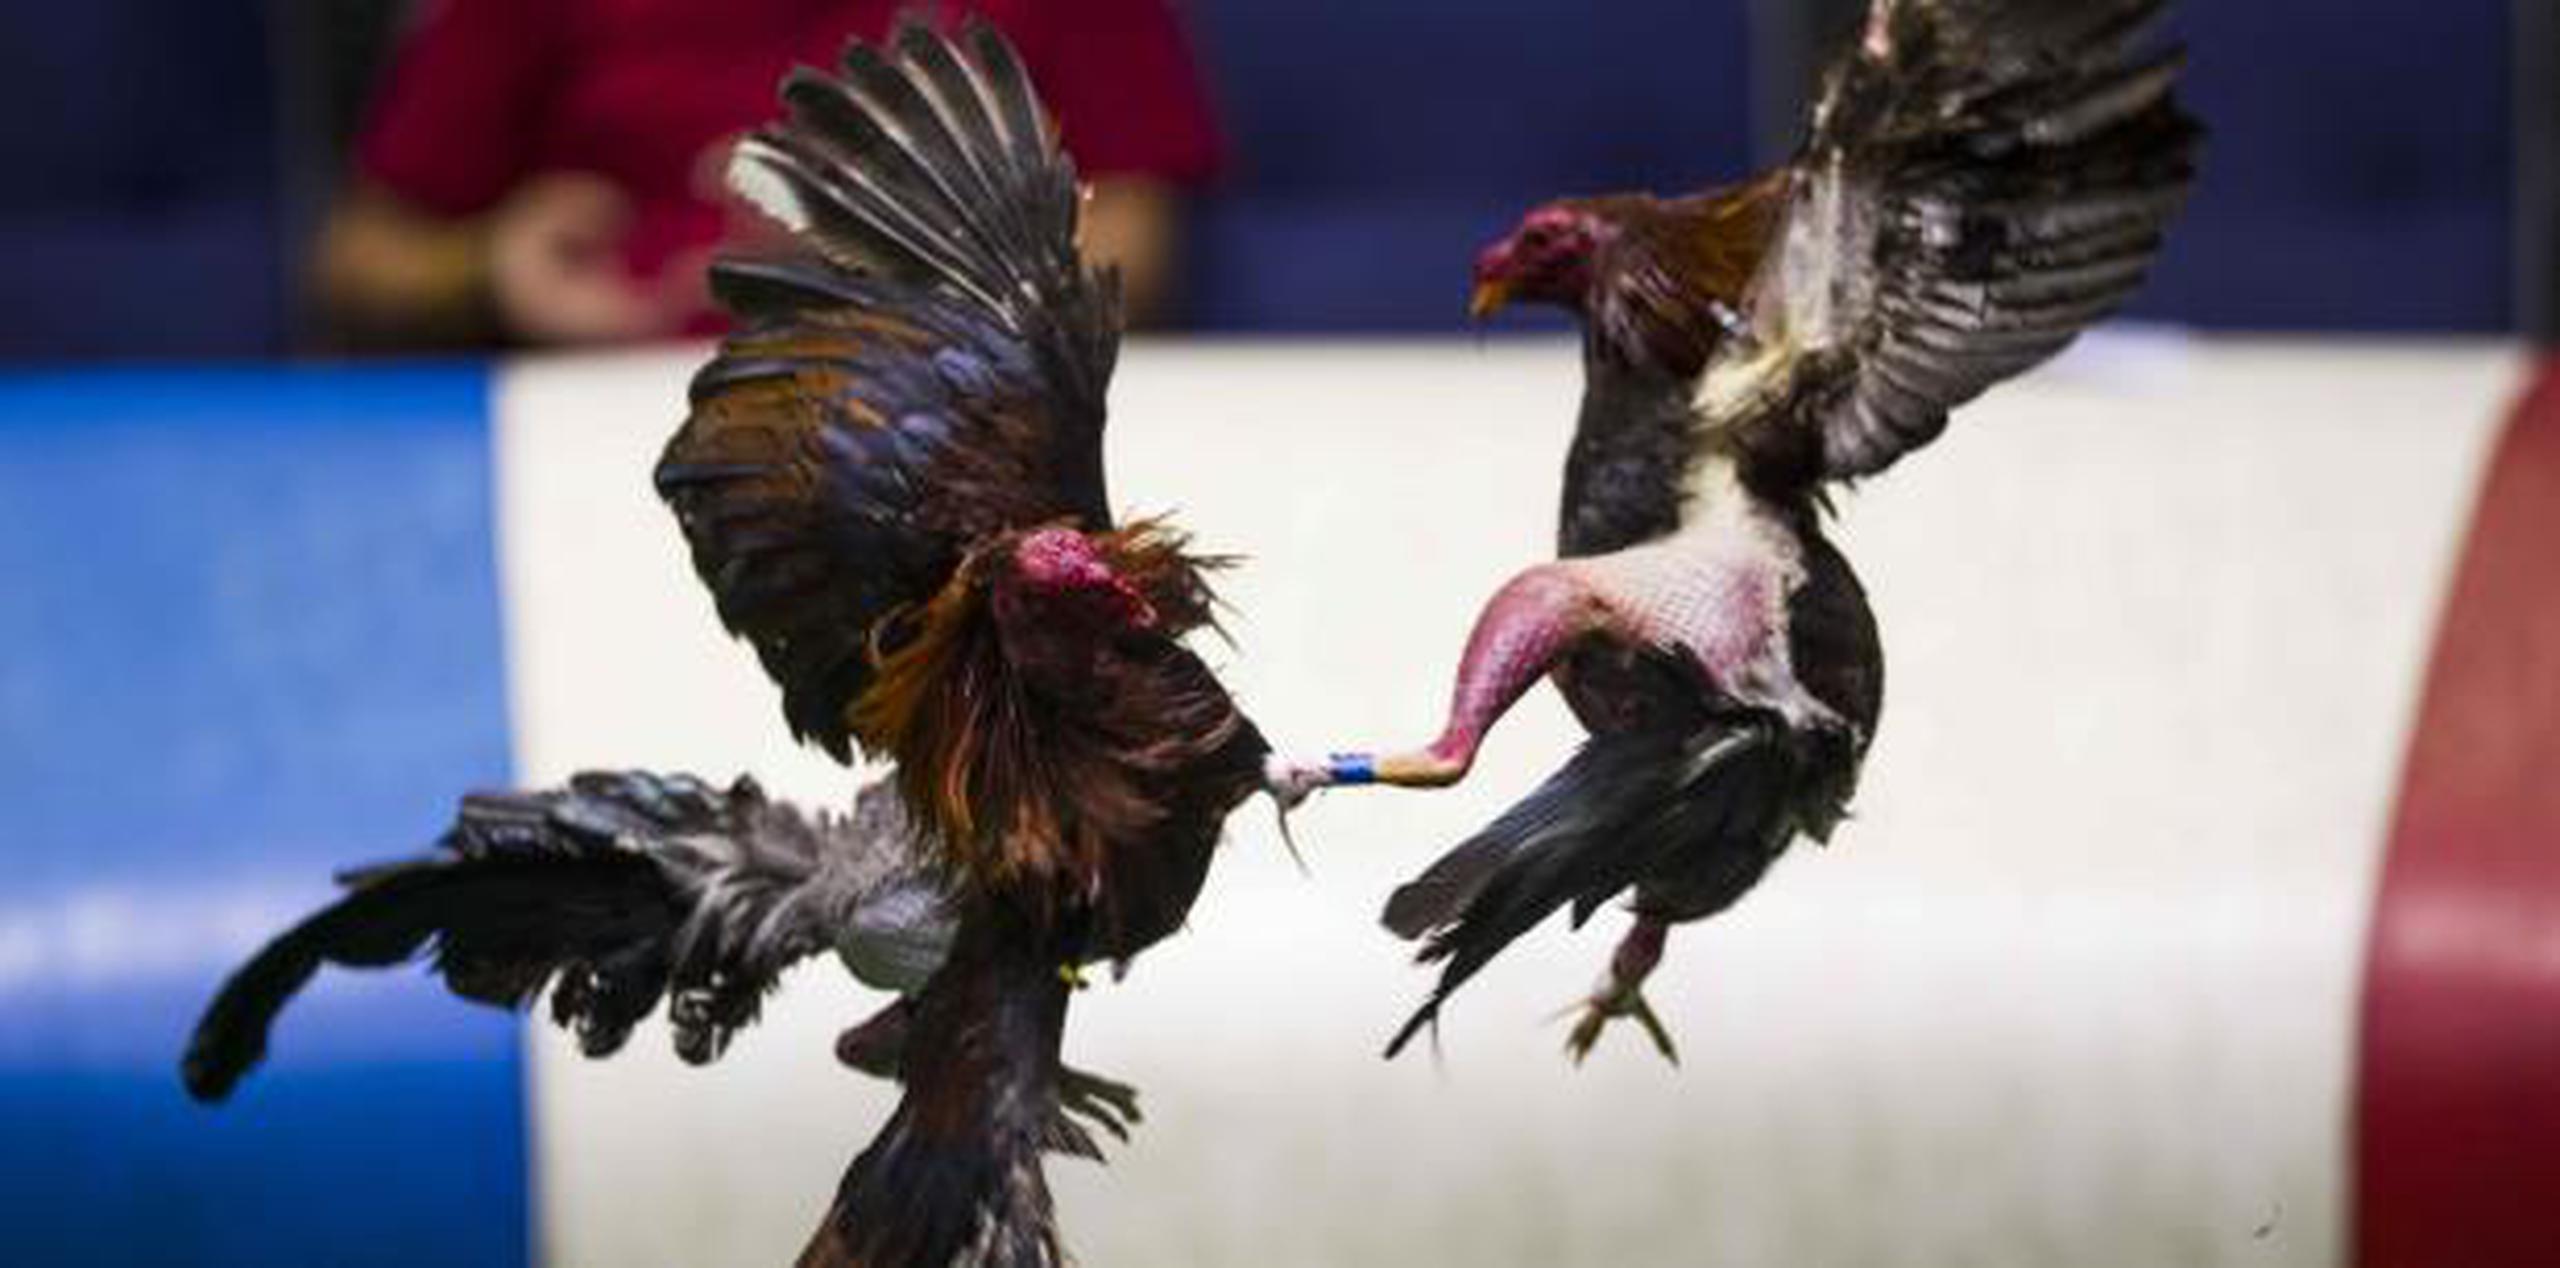 Hace unos meses se han llevado a cabo discusiones sobre eliminar las peleas de gallos en la Isla por el proyecto radicado ante la Cámara de los Estados Unidos. (Archivo)